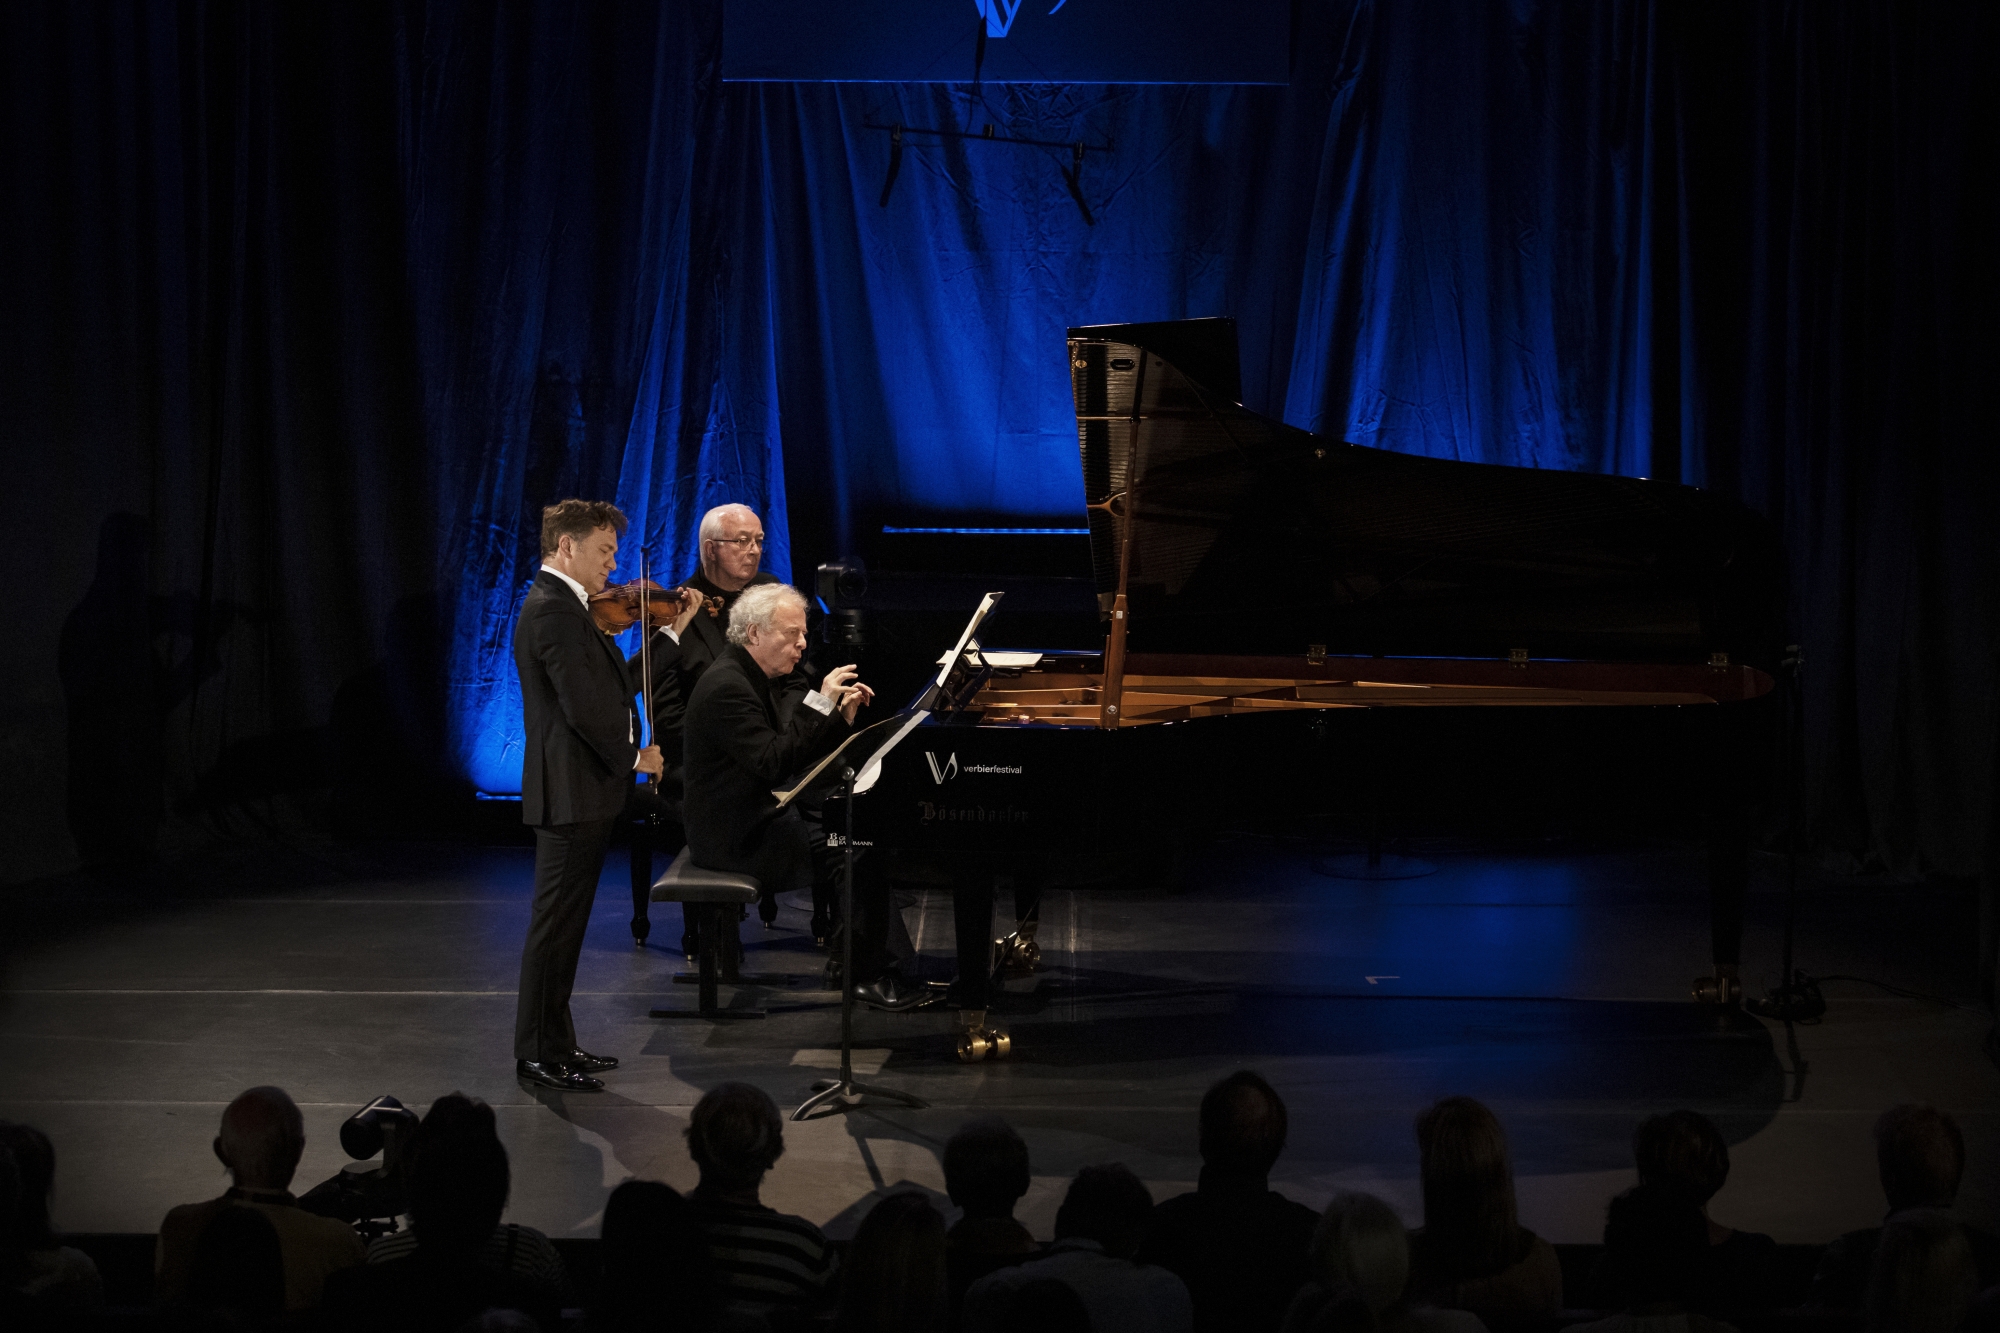 Dimanche dernier, le concert de Renaud Capuçon et Andras Schiff a affiché complet.